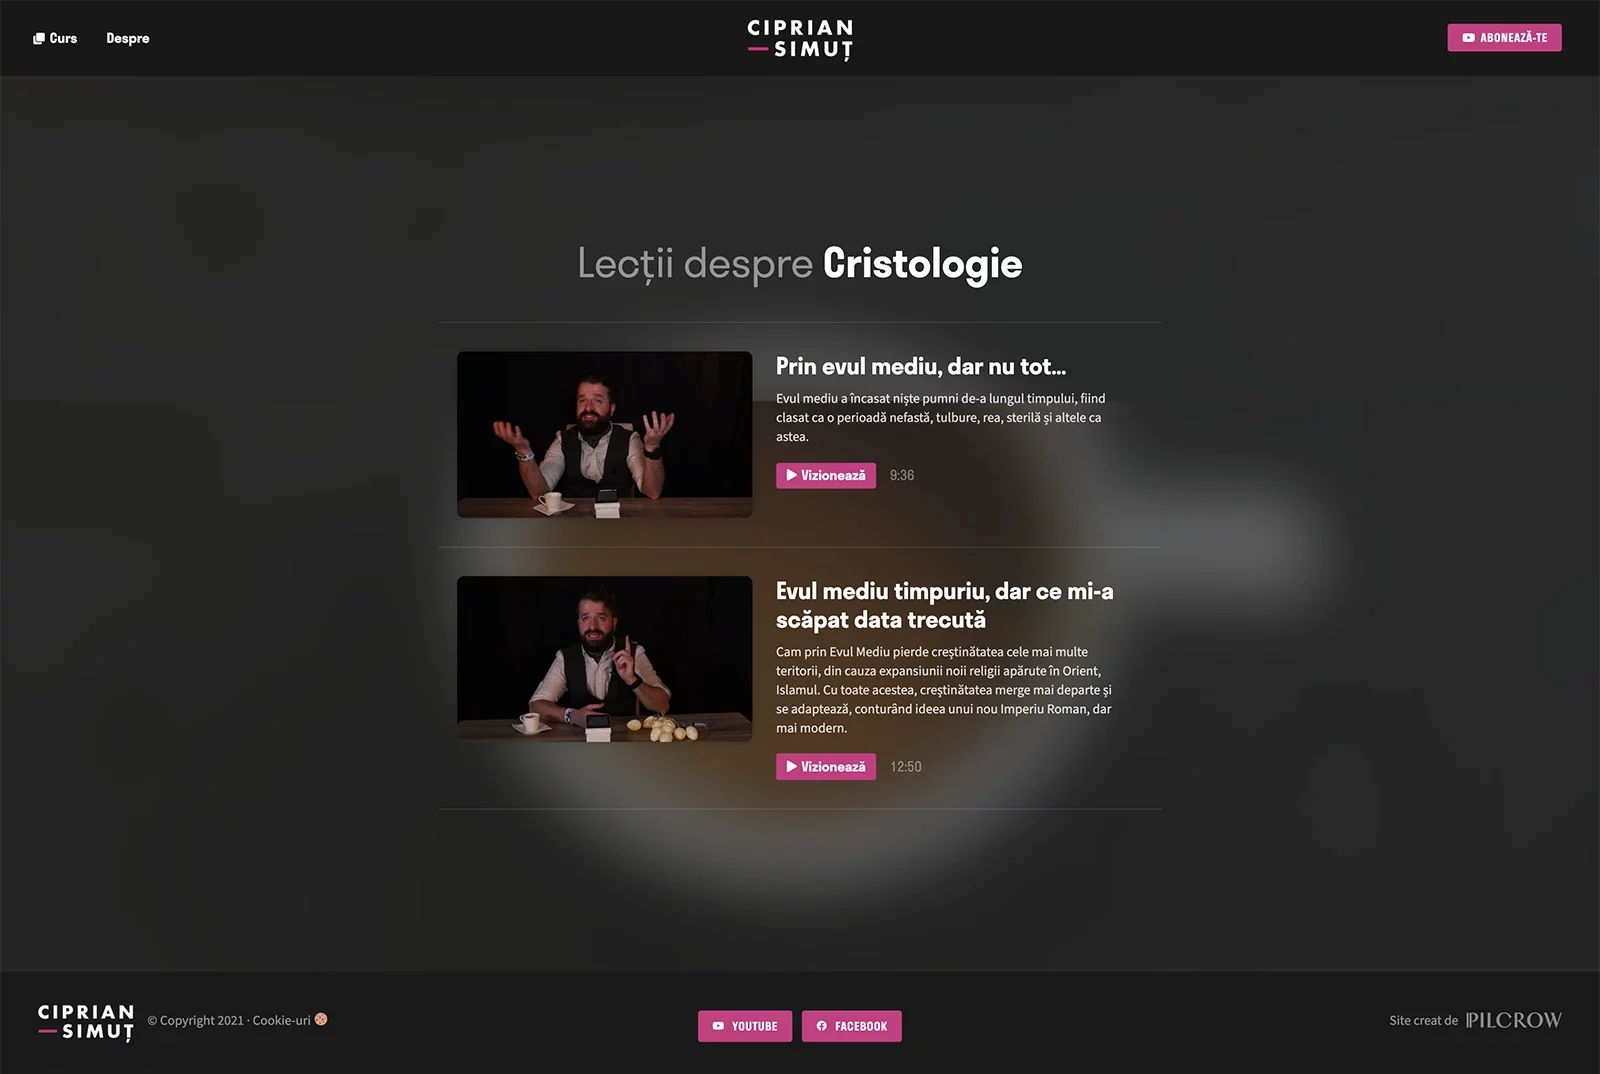 A screenshot of Ciprian Simut's website